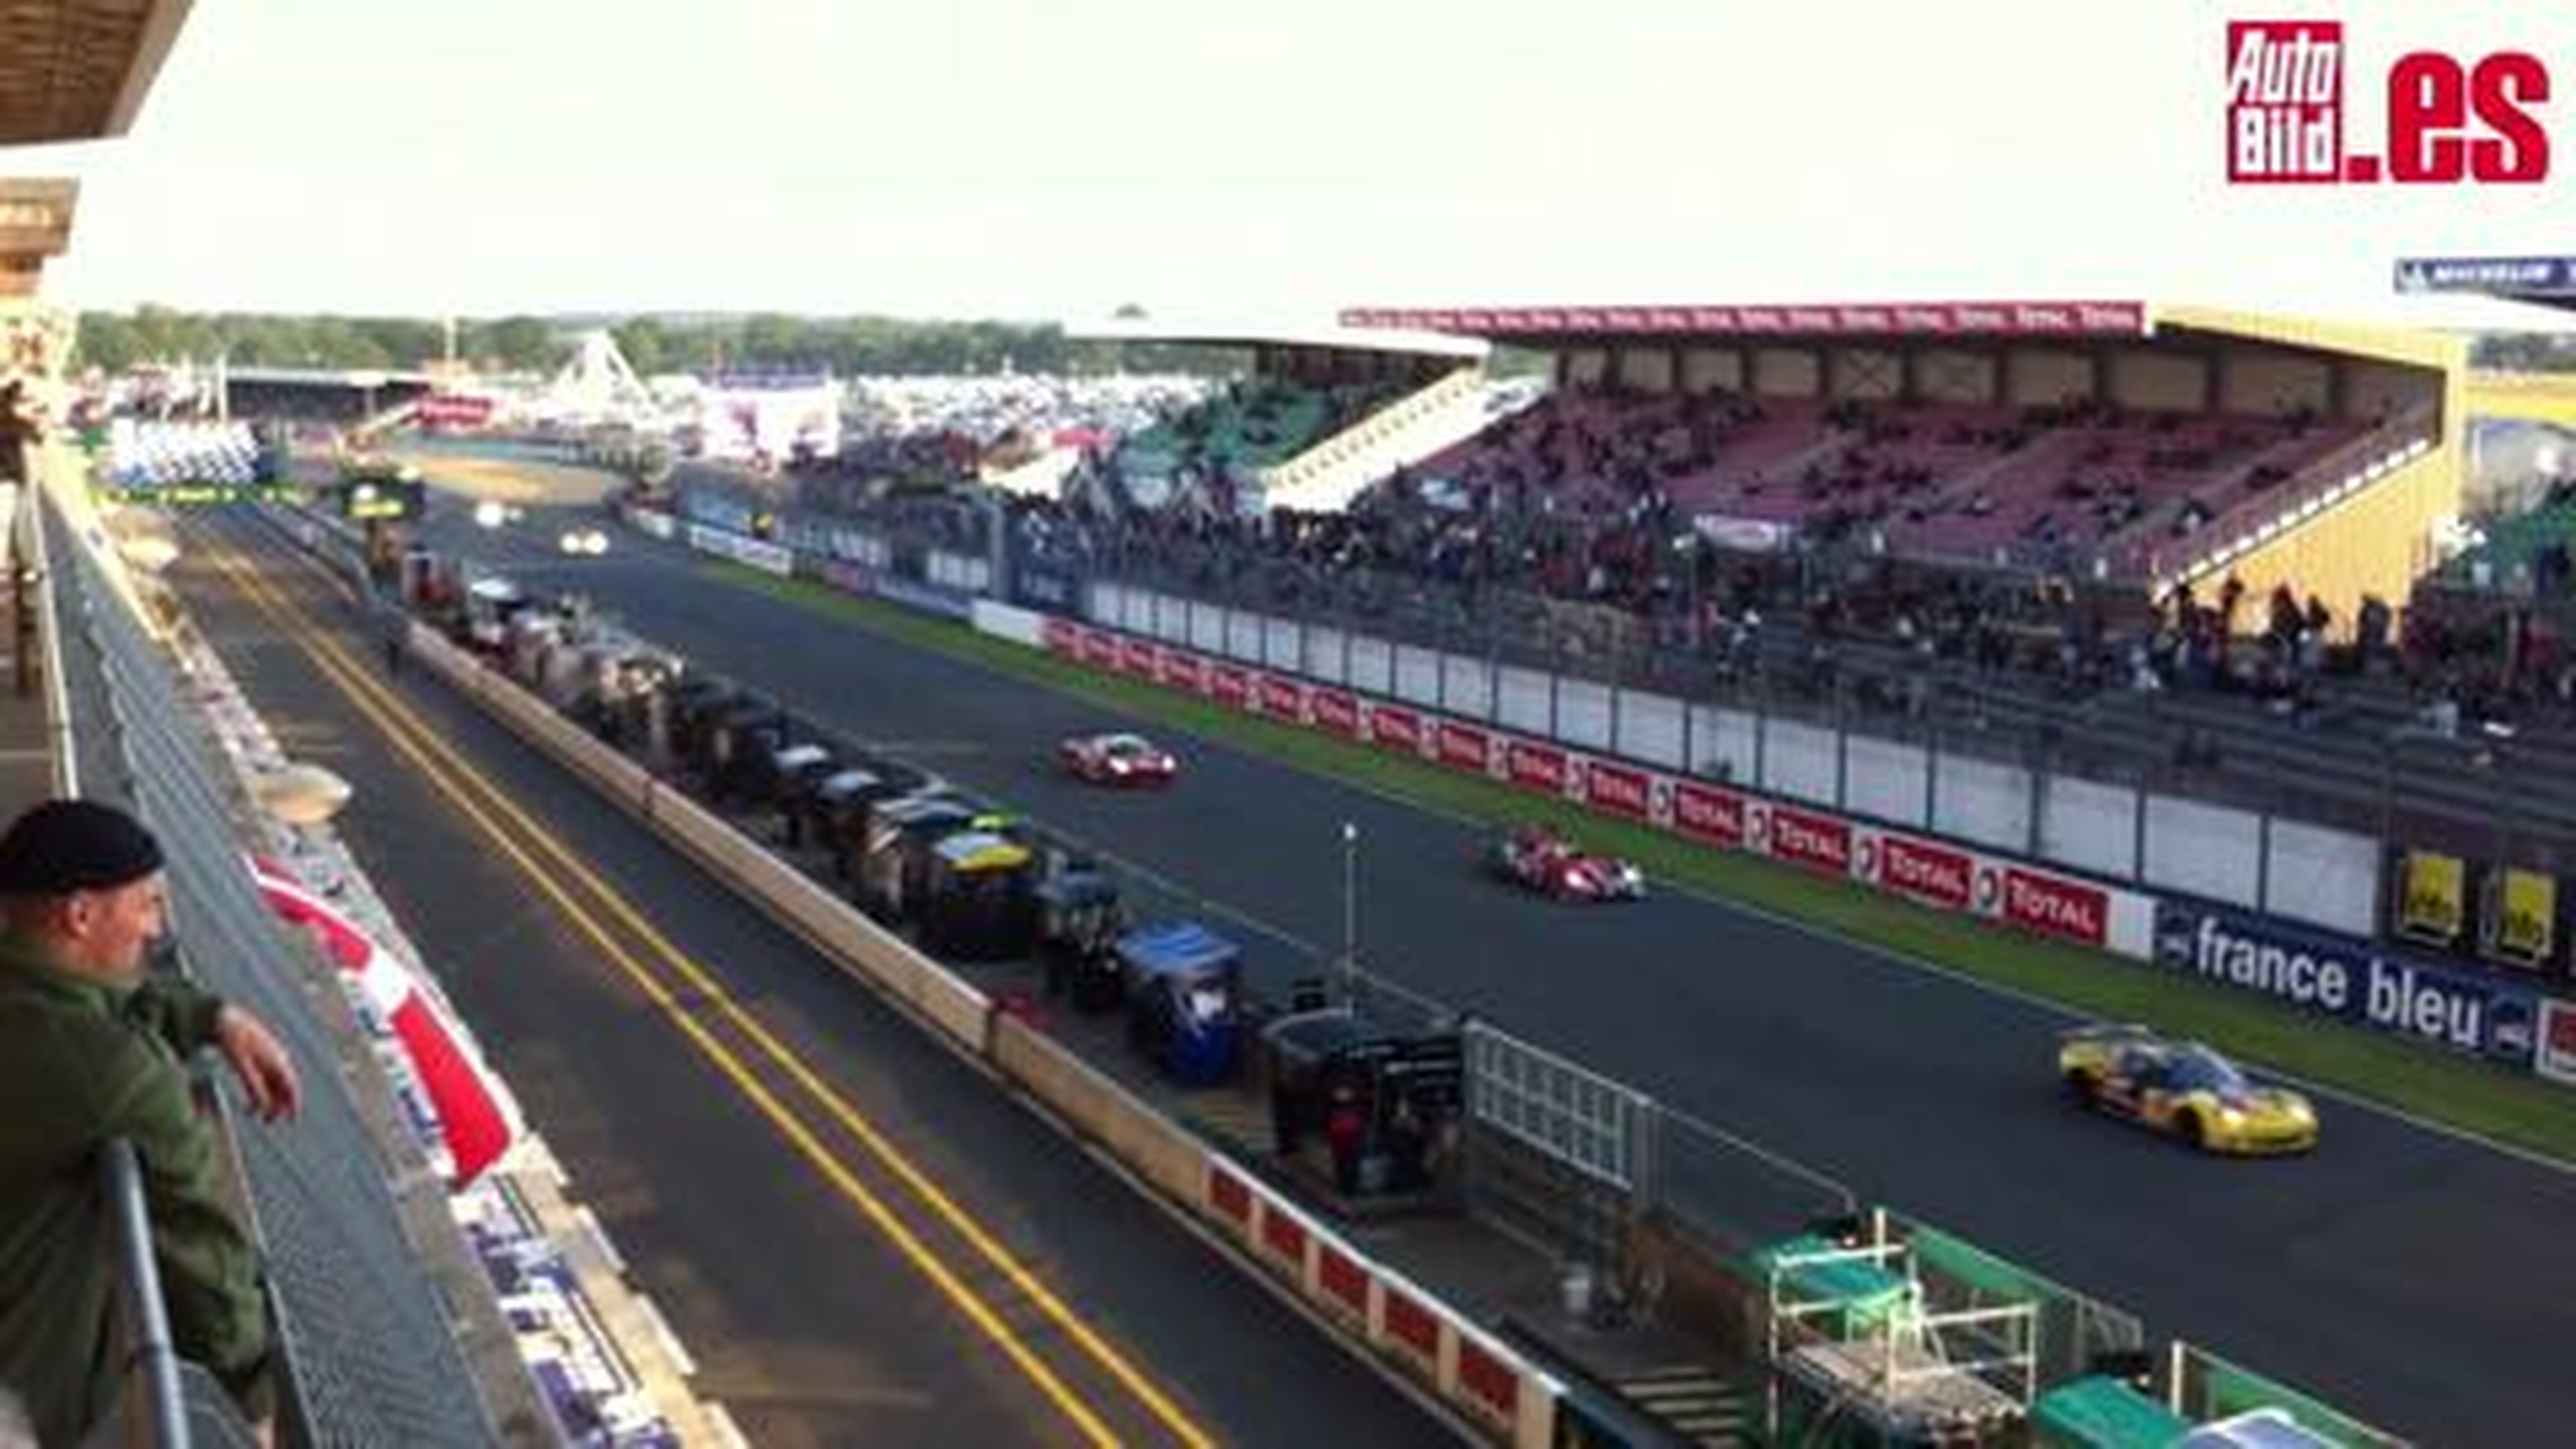 Le Mans 2012